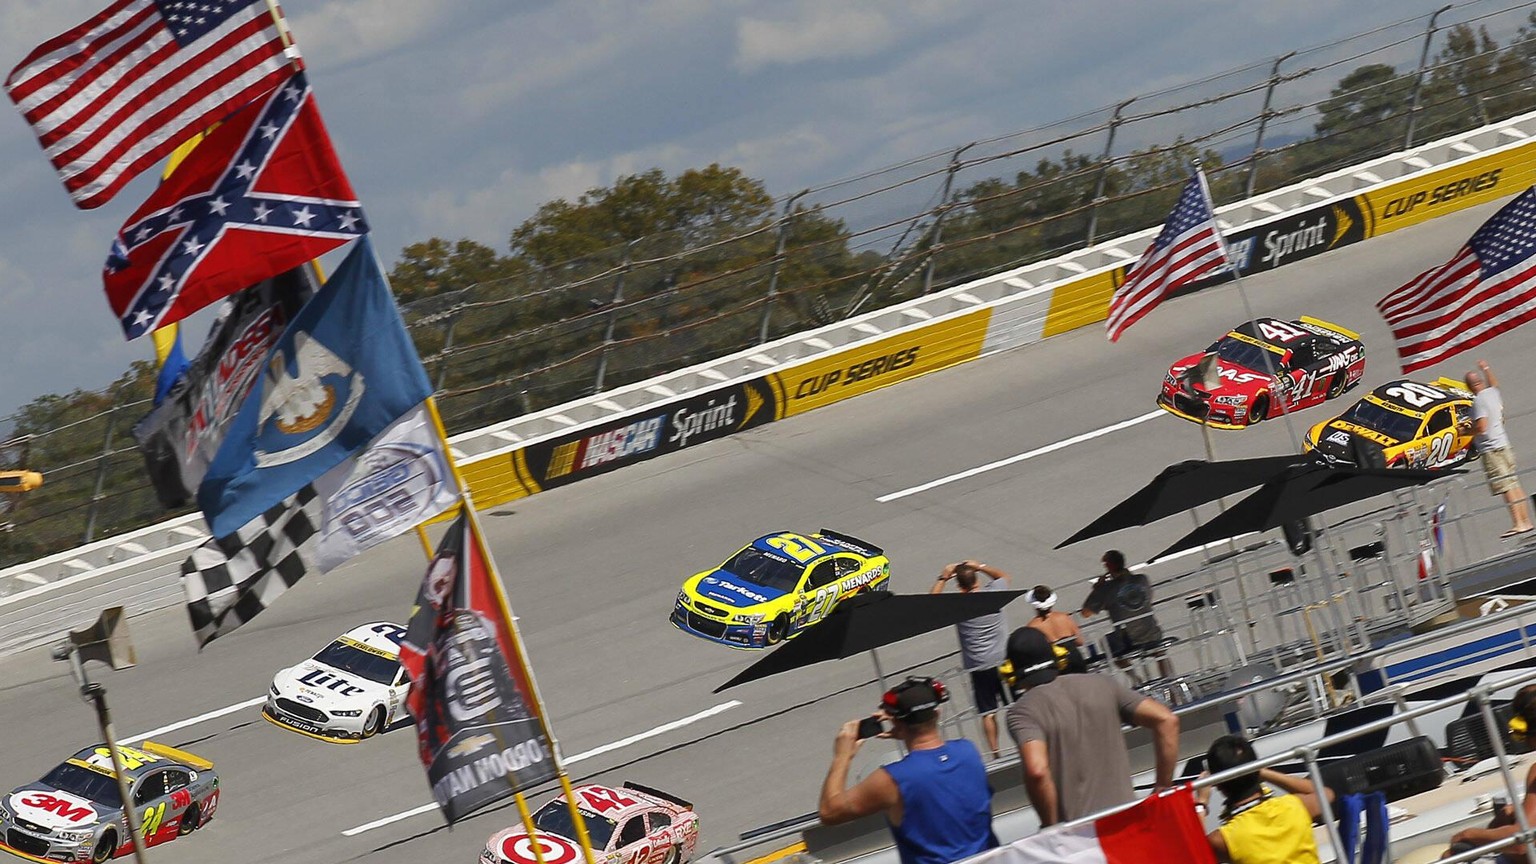 Die Konföderierten-Flagge weht unterhalb der US-Flagge: Szene eines NASCAR-Rennens in Alabama.